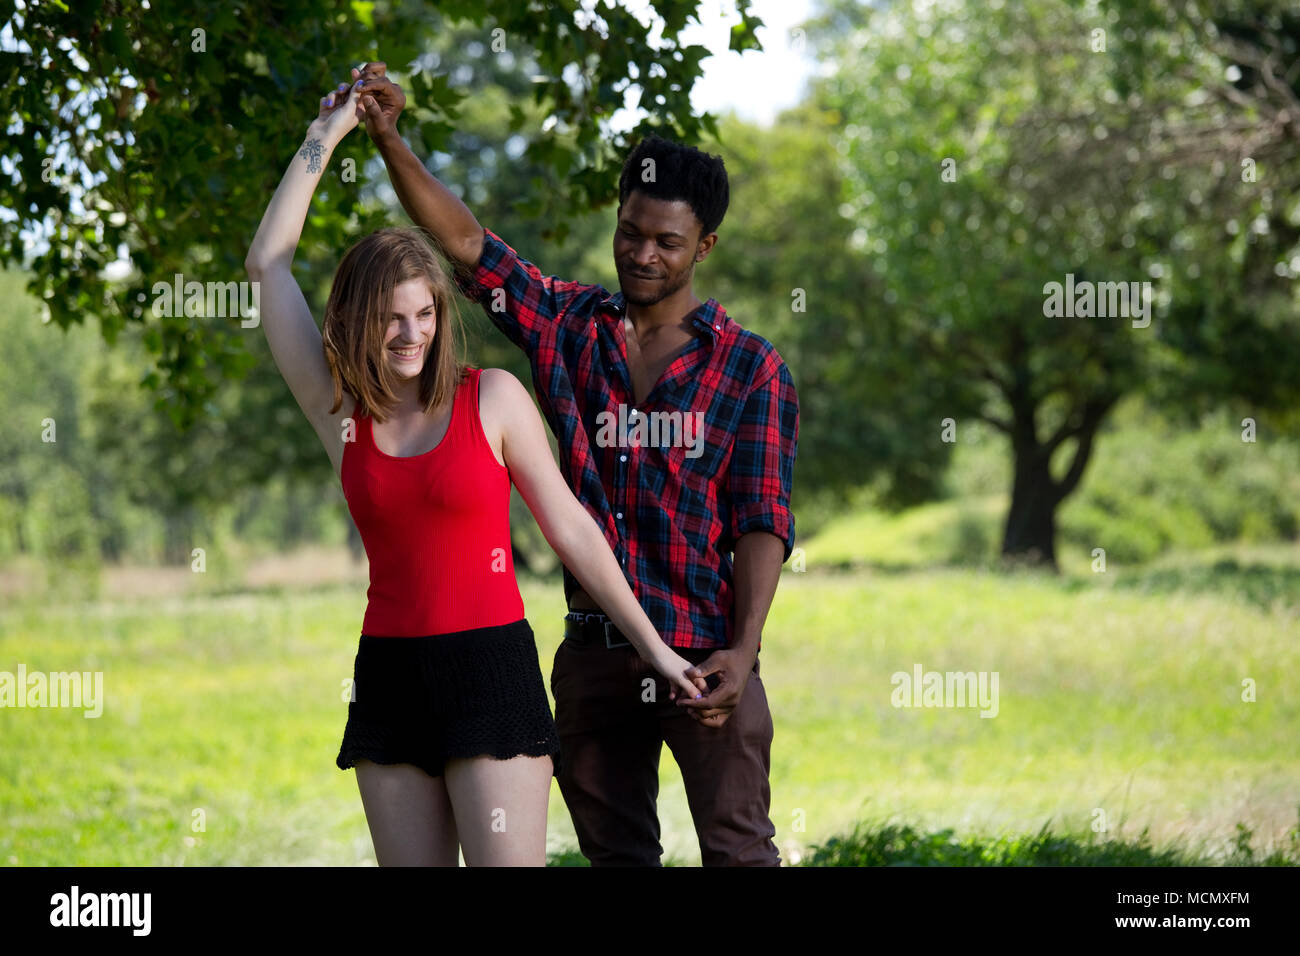 Paar tanzen im Park Stockfoto